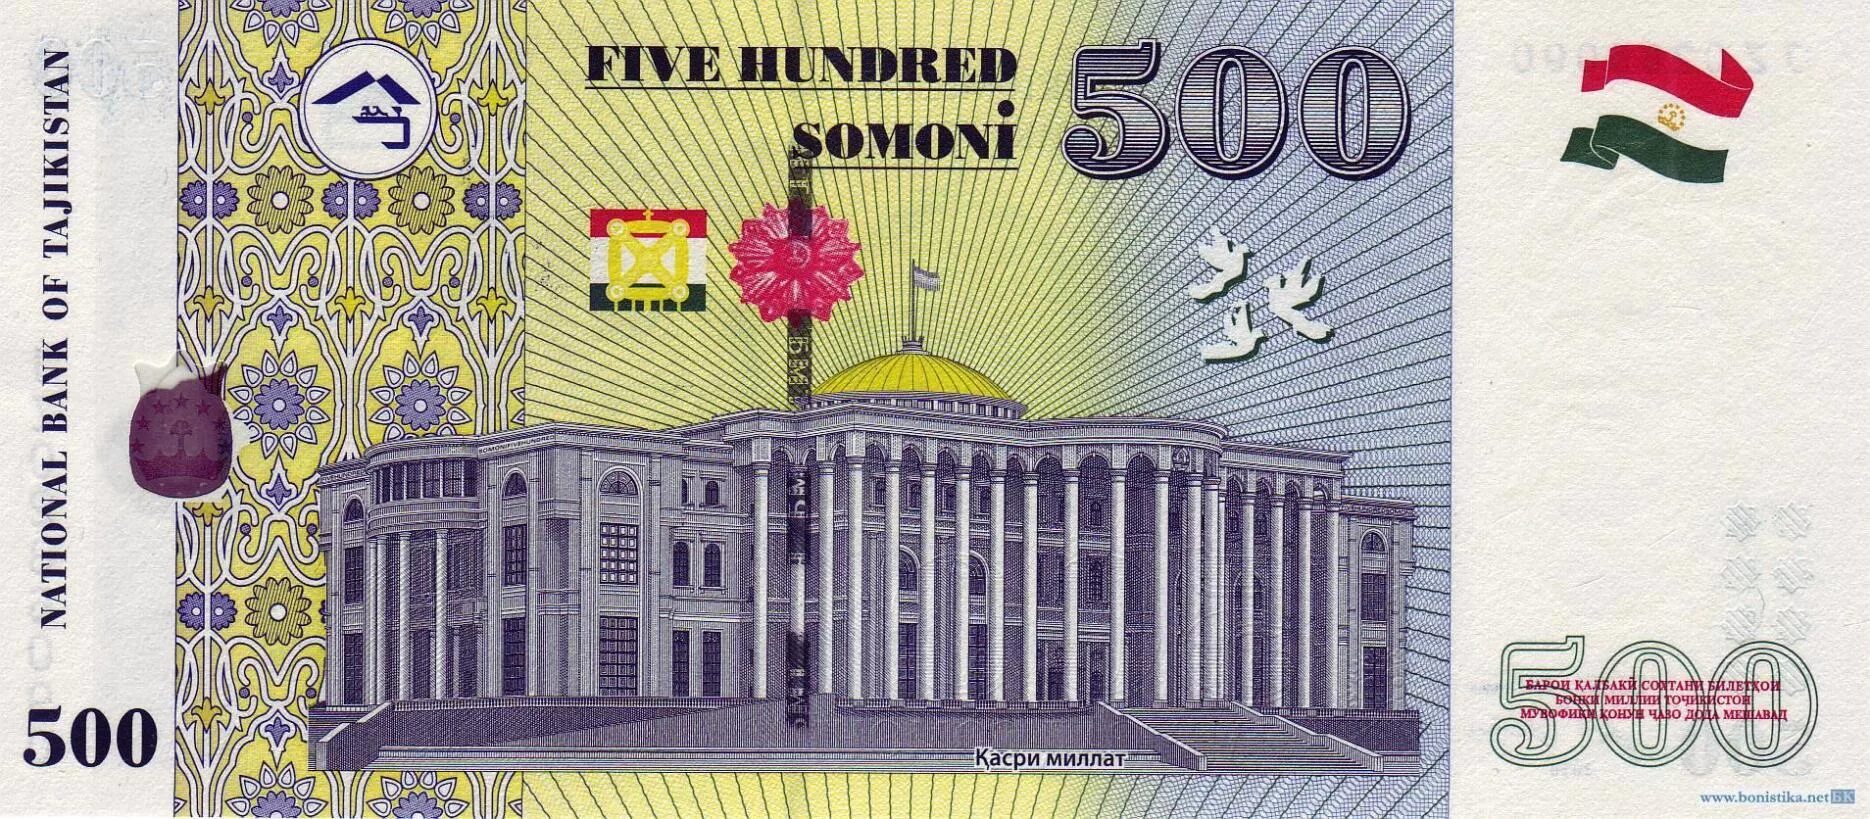 500 таджикски. Таджикский купюры 500 Сомони. Купюра Таджикистана 500 Сомони. Купюра 500 Сомони. Денежные знаки Таджикистана.